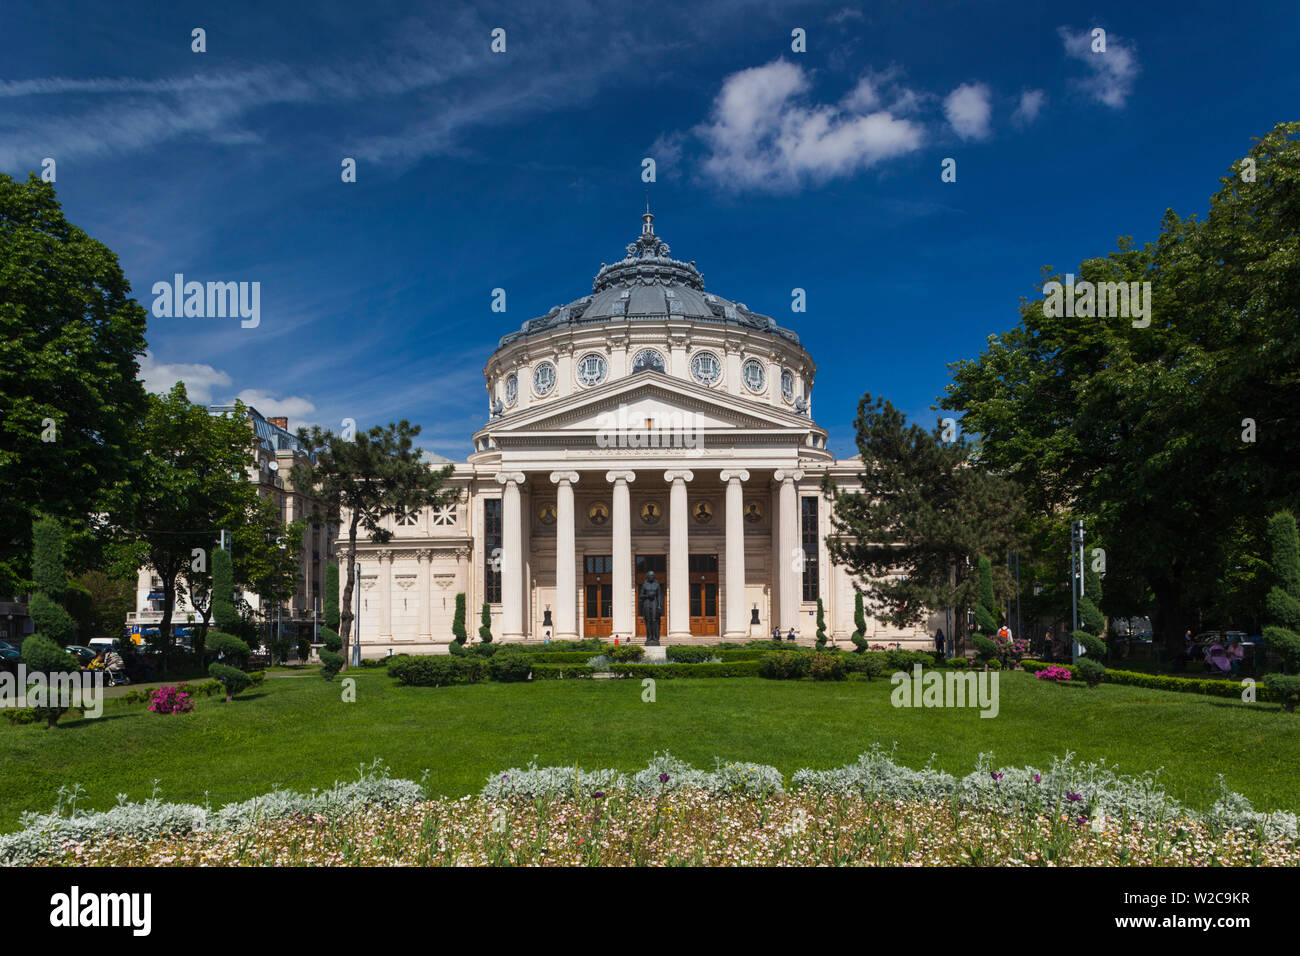 Romania, Bucharest, Romanian Atheneum, exterior Stock Photo